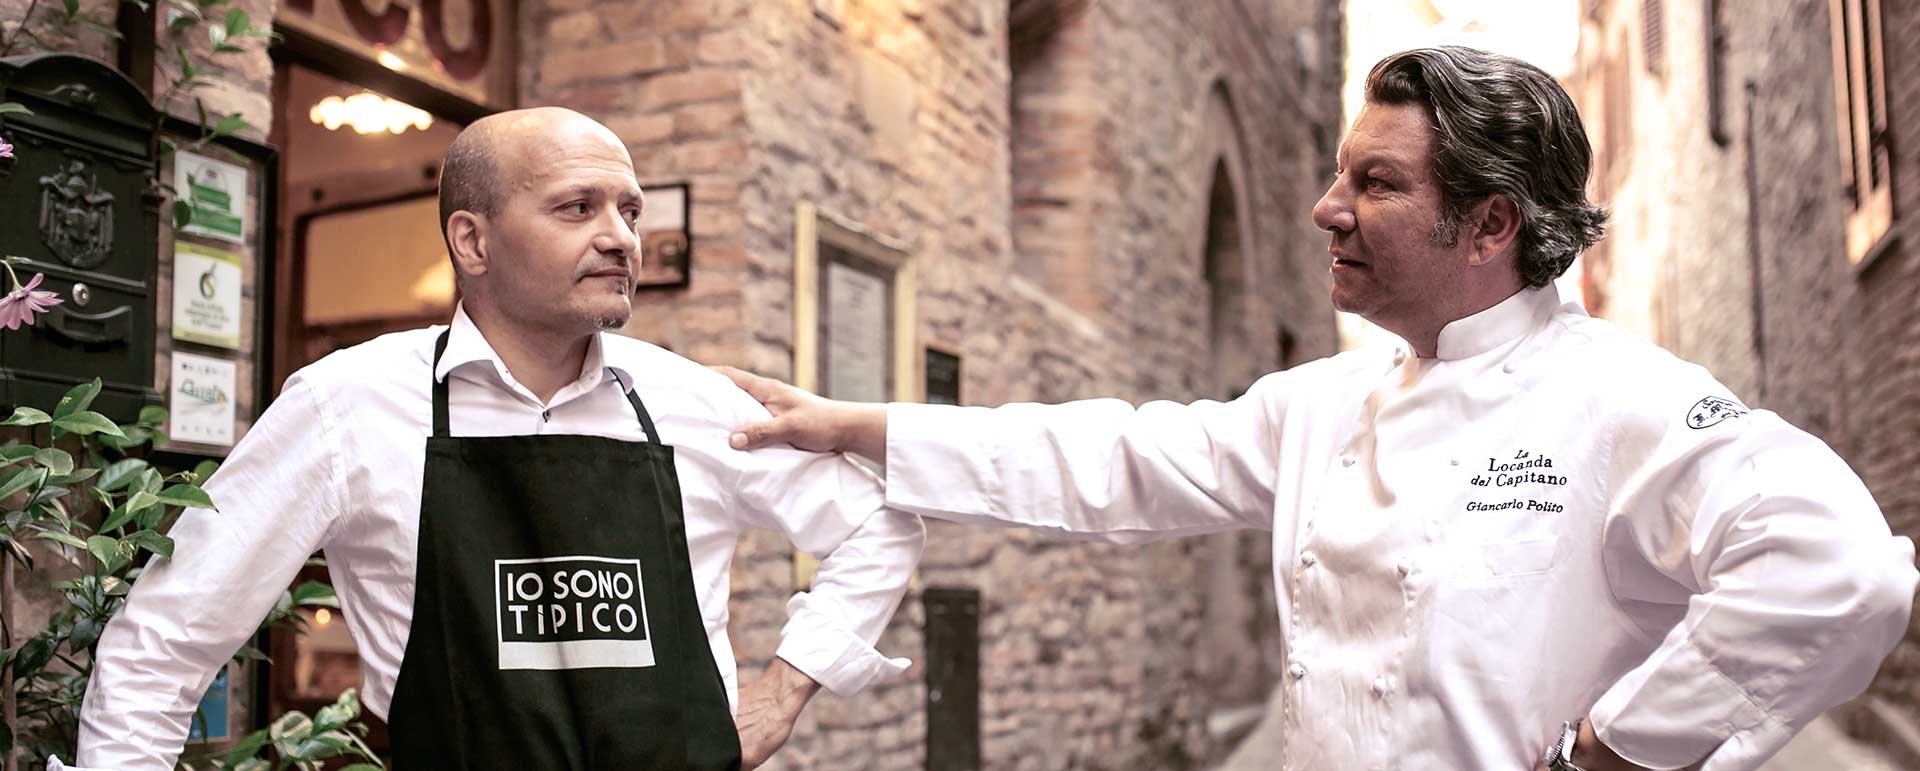 Tipico Osteria & Locanda del Capitano Ristorante a Montone 100% Made in Umbria - Sharing Restaurant di Giancarlo Polito e Paolo Morbidoni